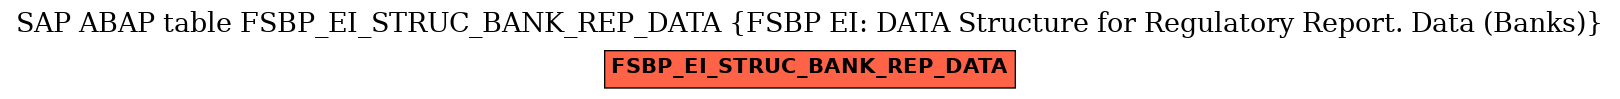 E-R Diagram for table FSBP_EI_STRUC_BANK_REP_DATA (FSBP EI: DATA Structure for Regulatory Report. Data (Banks))